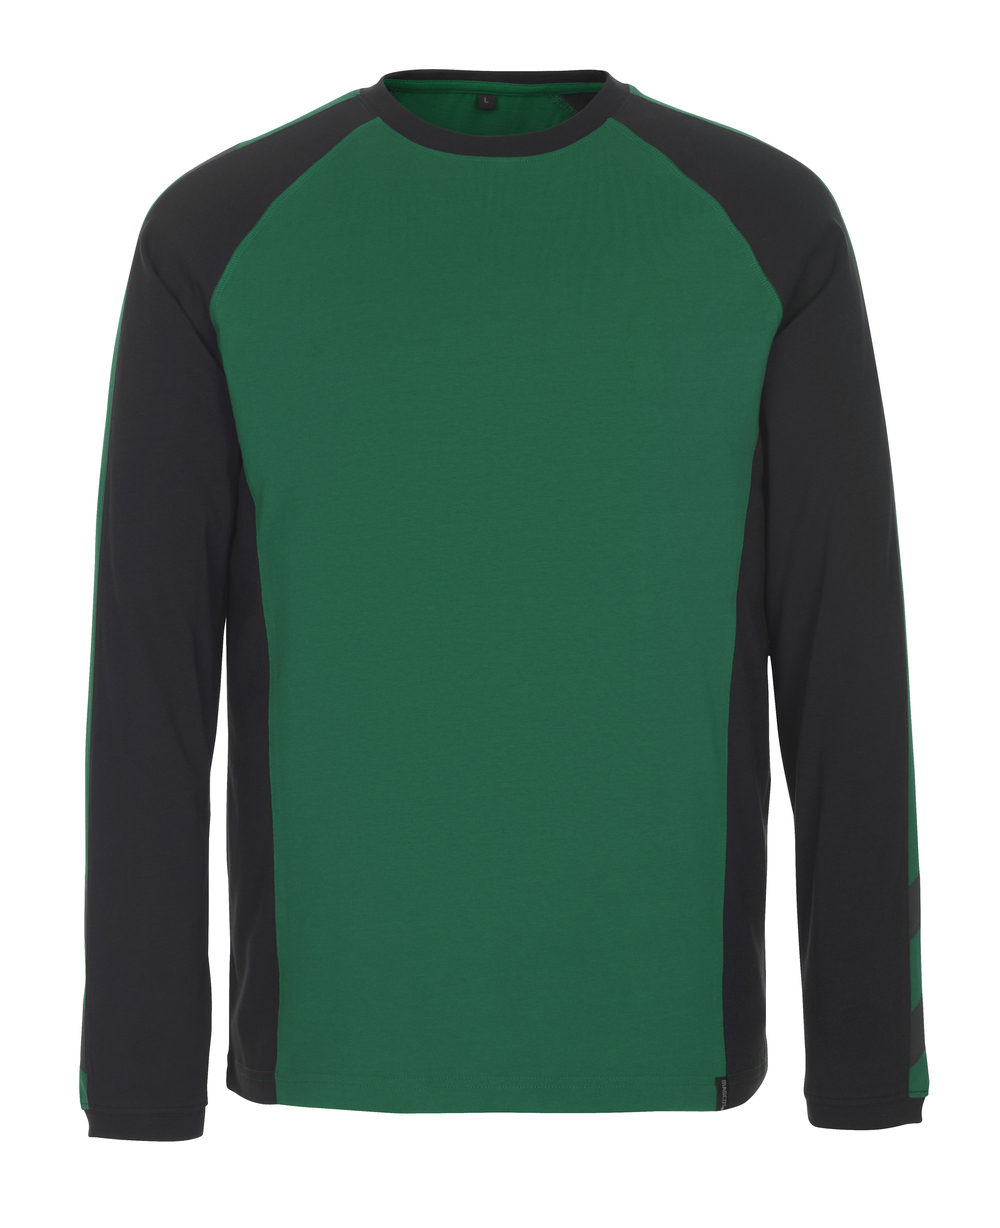 MASCOT-Workwear, T-Shirt, Bielefeld, UNIQUE, 195 g/m², grün/schwarz